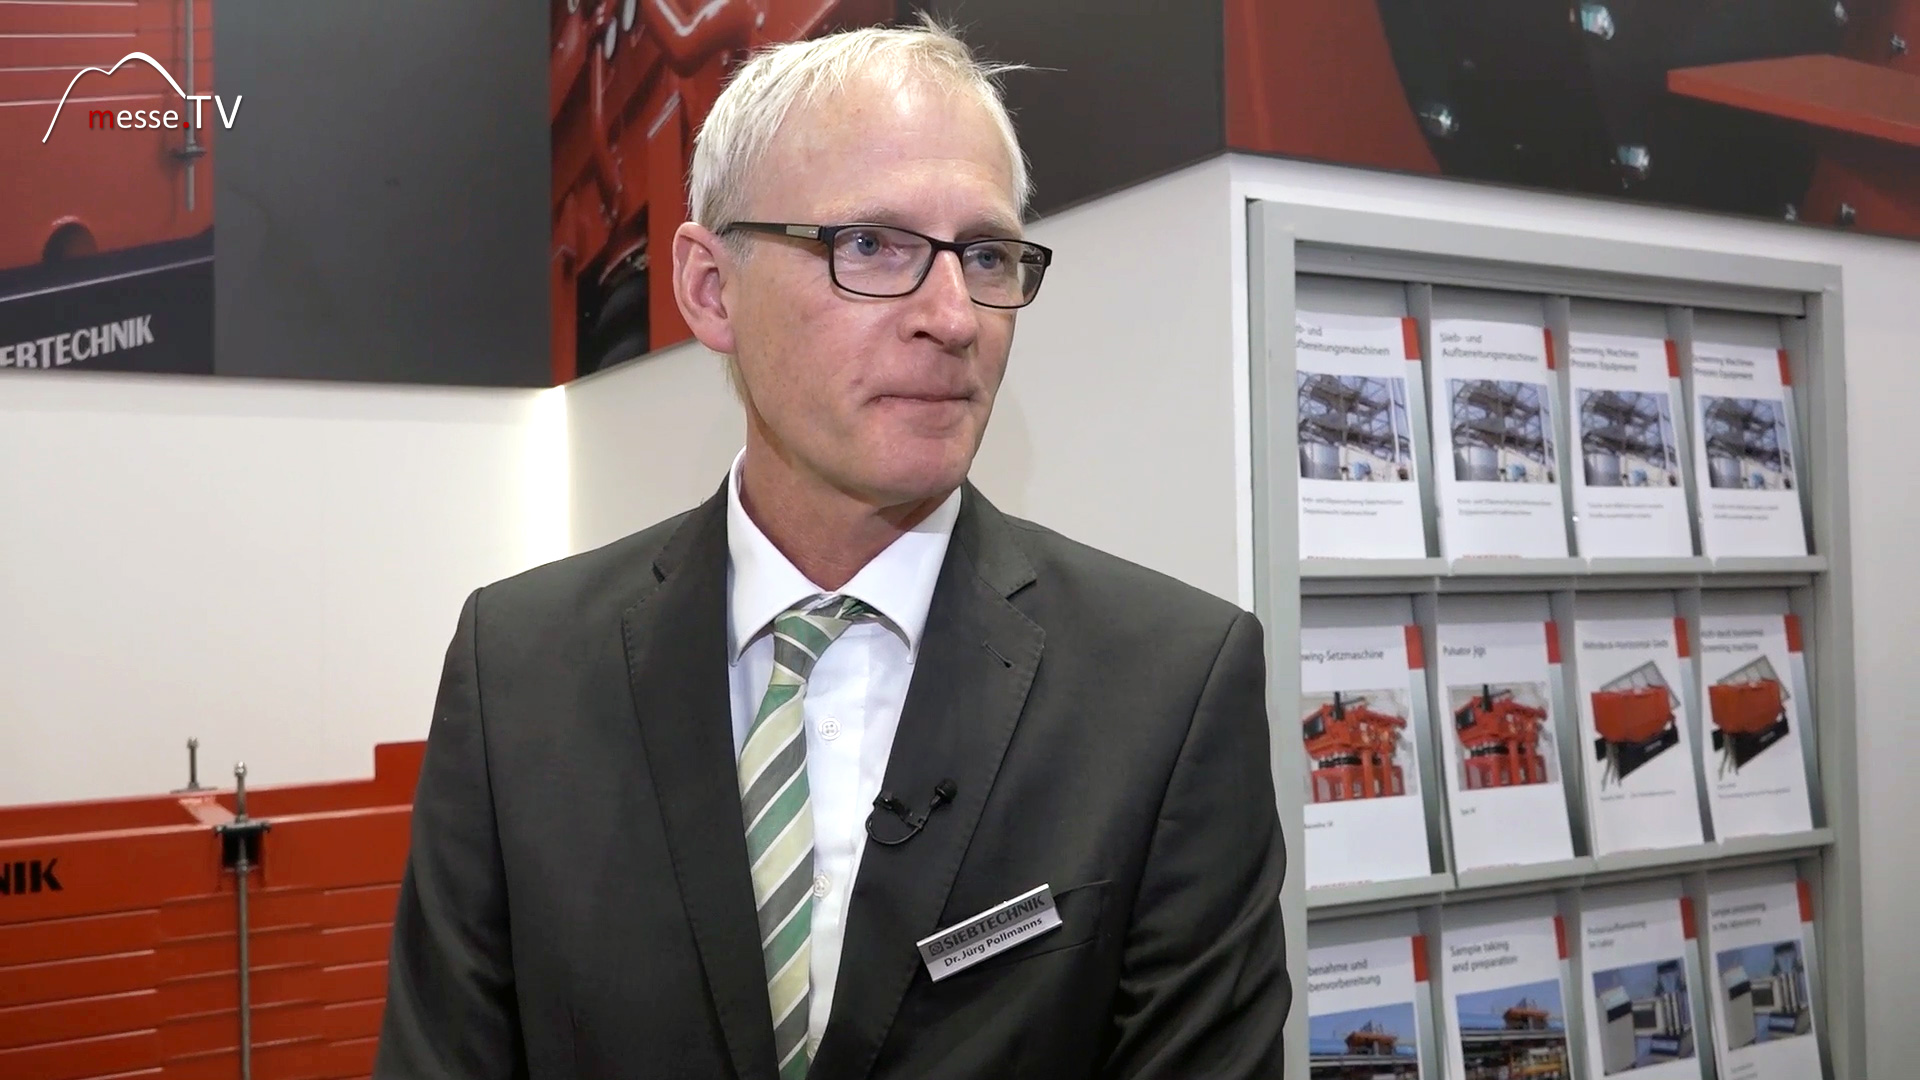 MesseTV Interview Juerg Pollmanns technical managing director screening technology bauma Munich